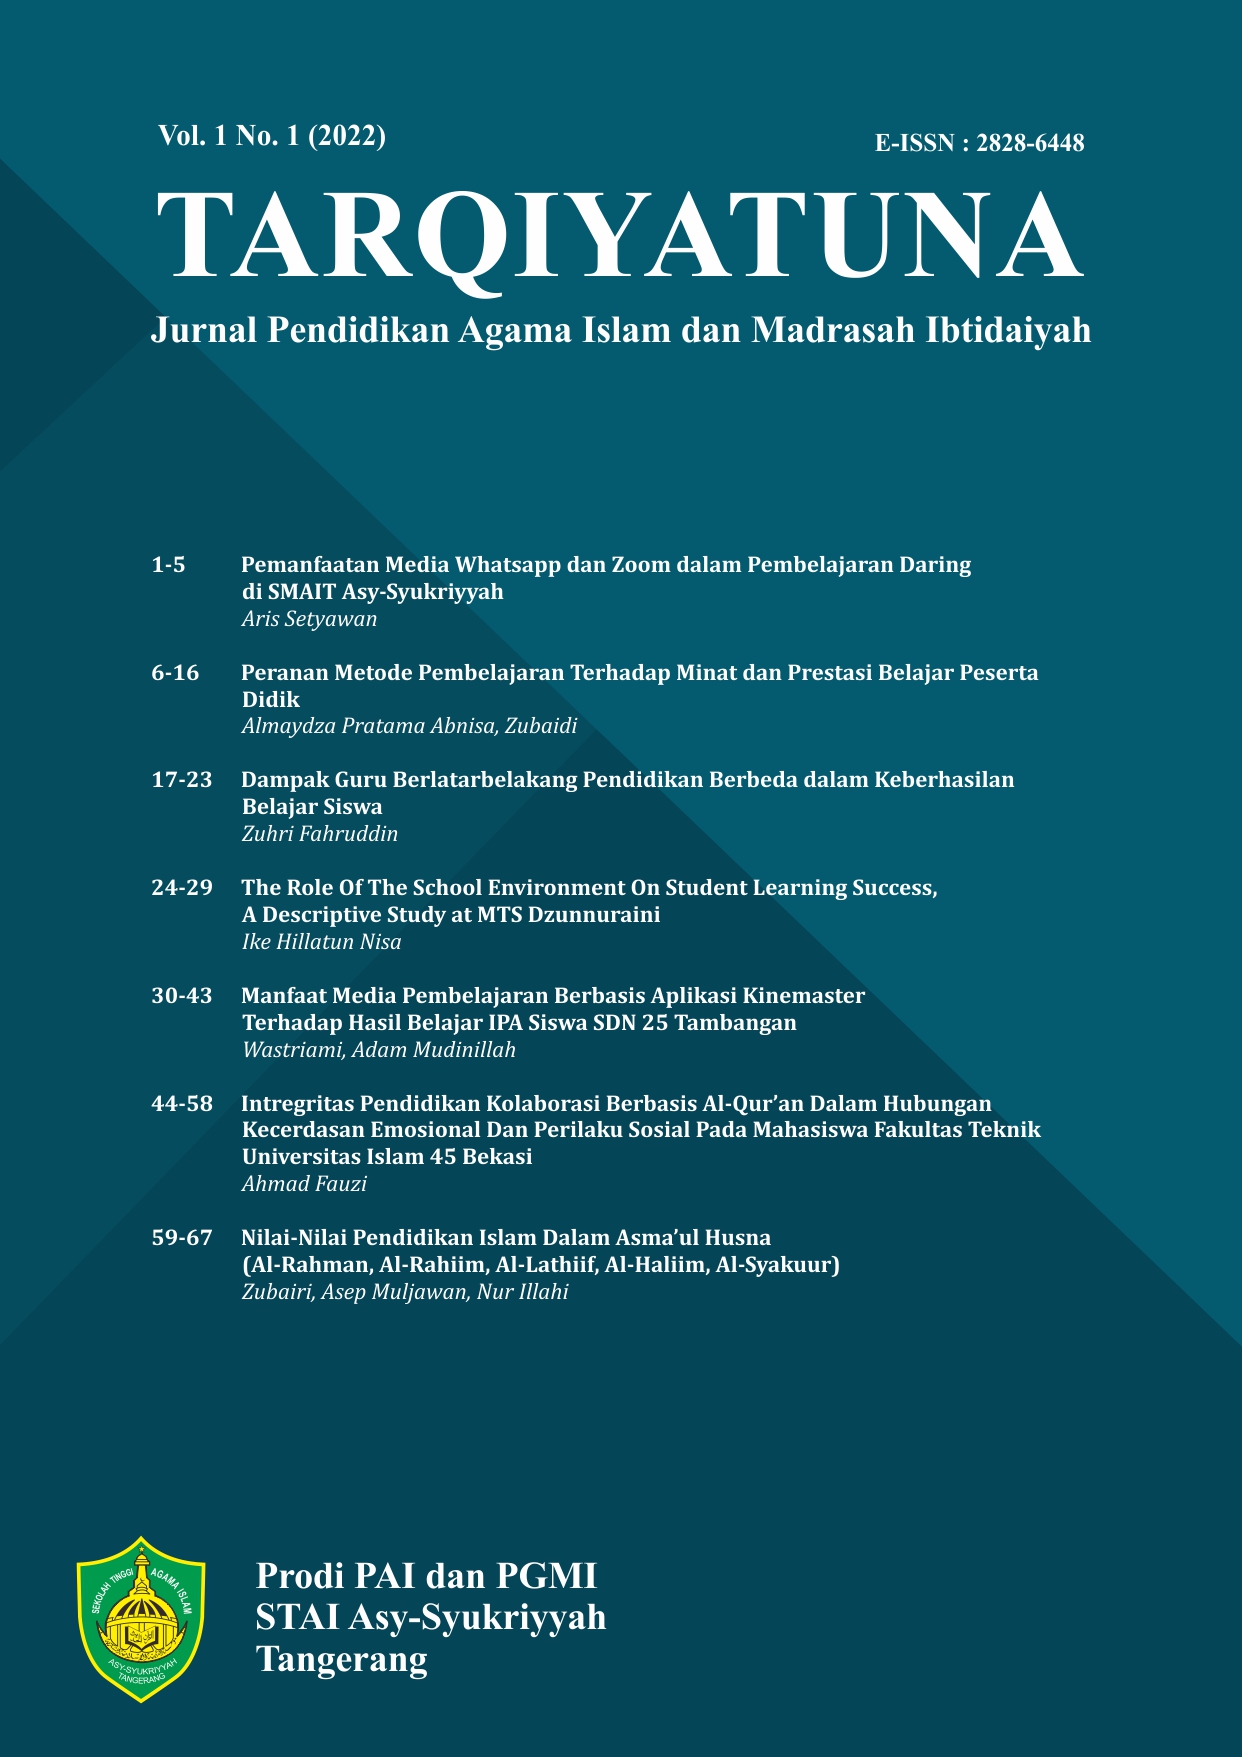 					View Vol. 1 No. 1 (2022): TARQIYATUNA: Jurnal Pendidikan Agama Islam dan Madrasah Ibtidaiyah
				